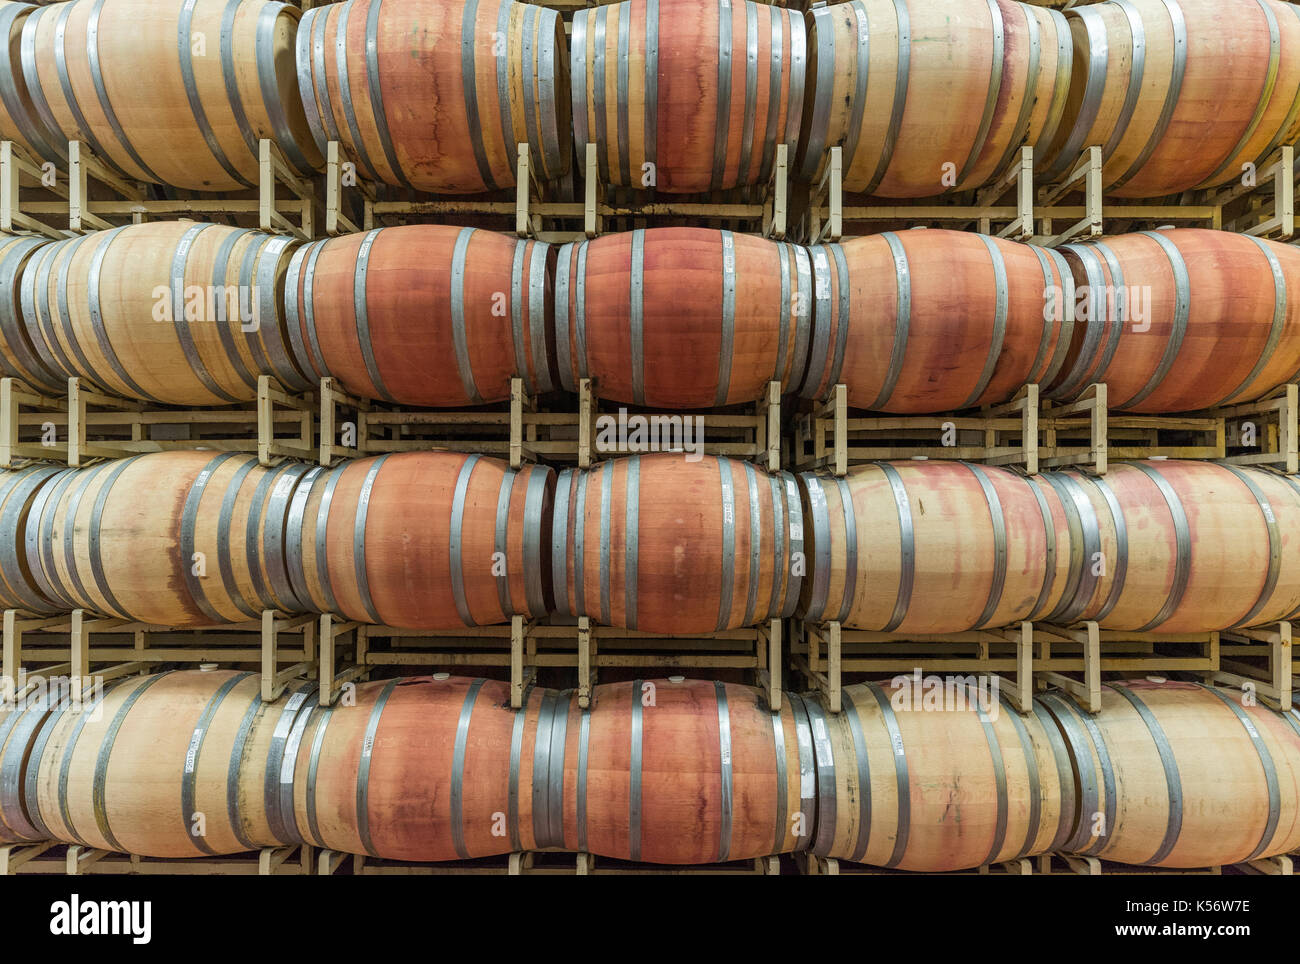 barrels in cellar of William Hill Winery (Gallo), Napa Valley, California Stock Photo